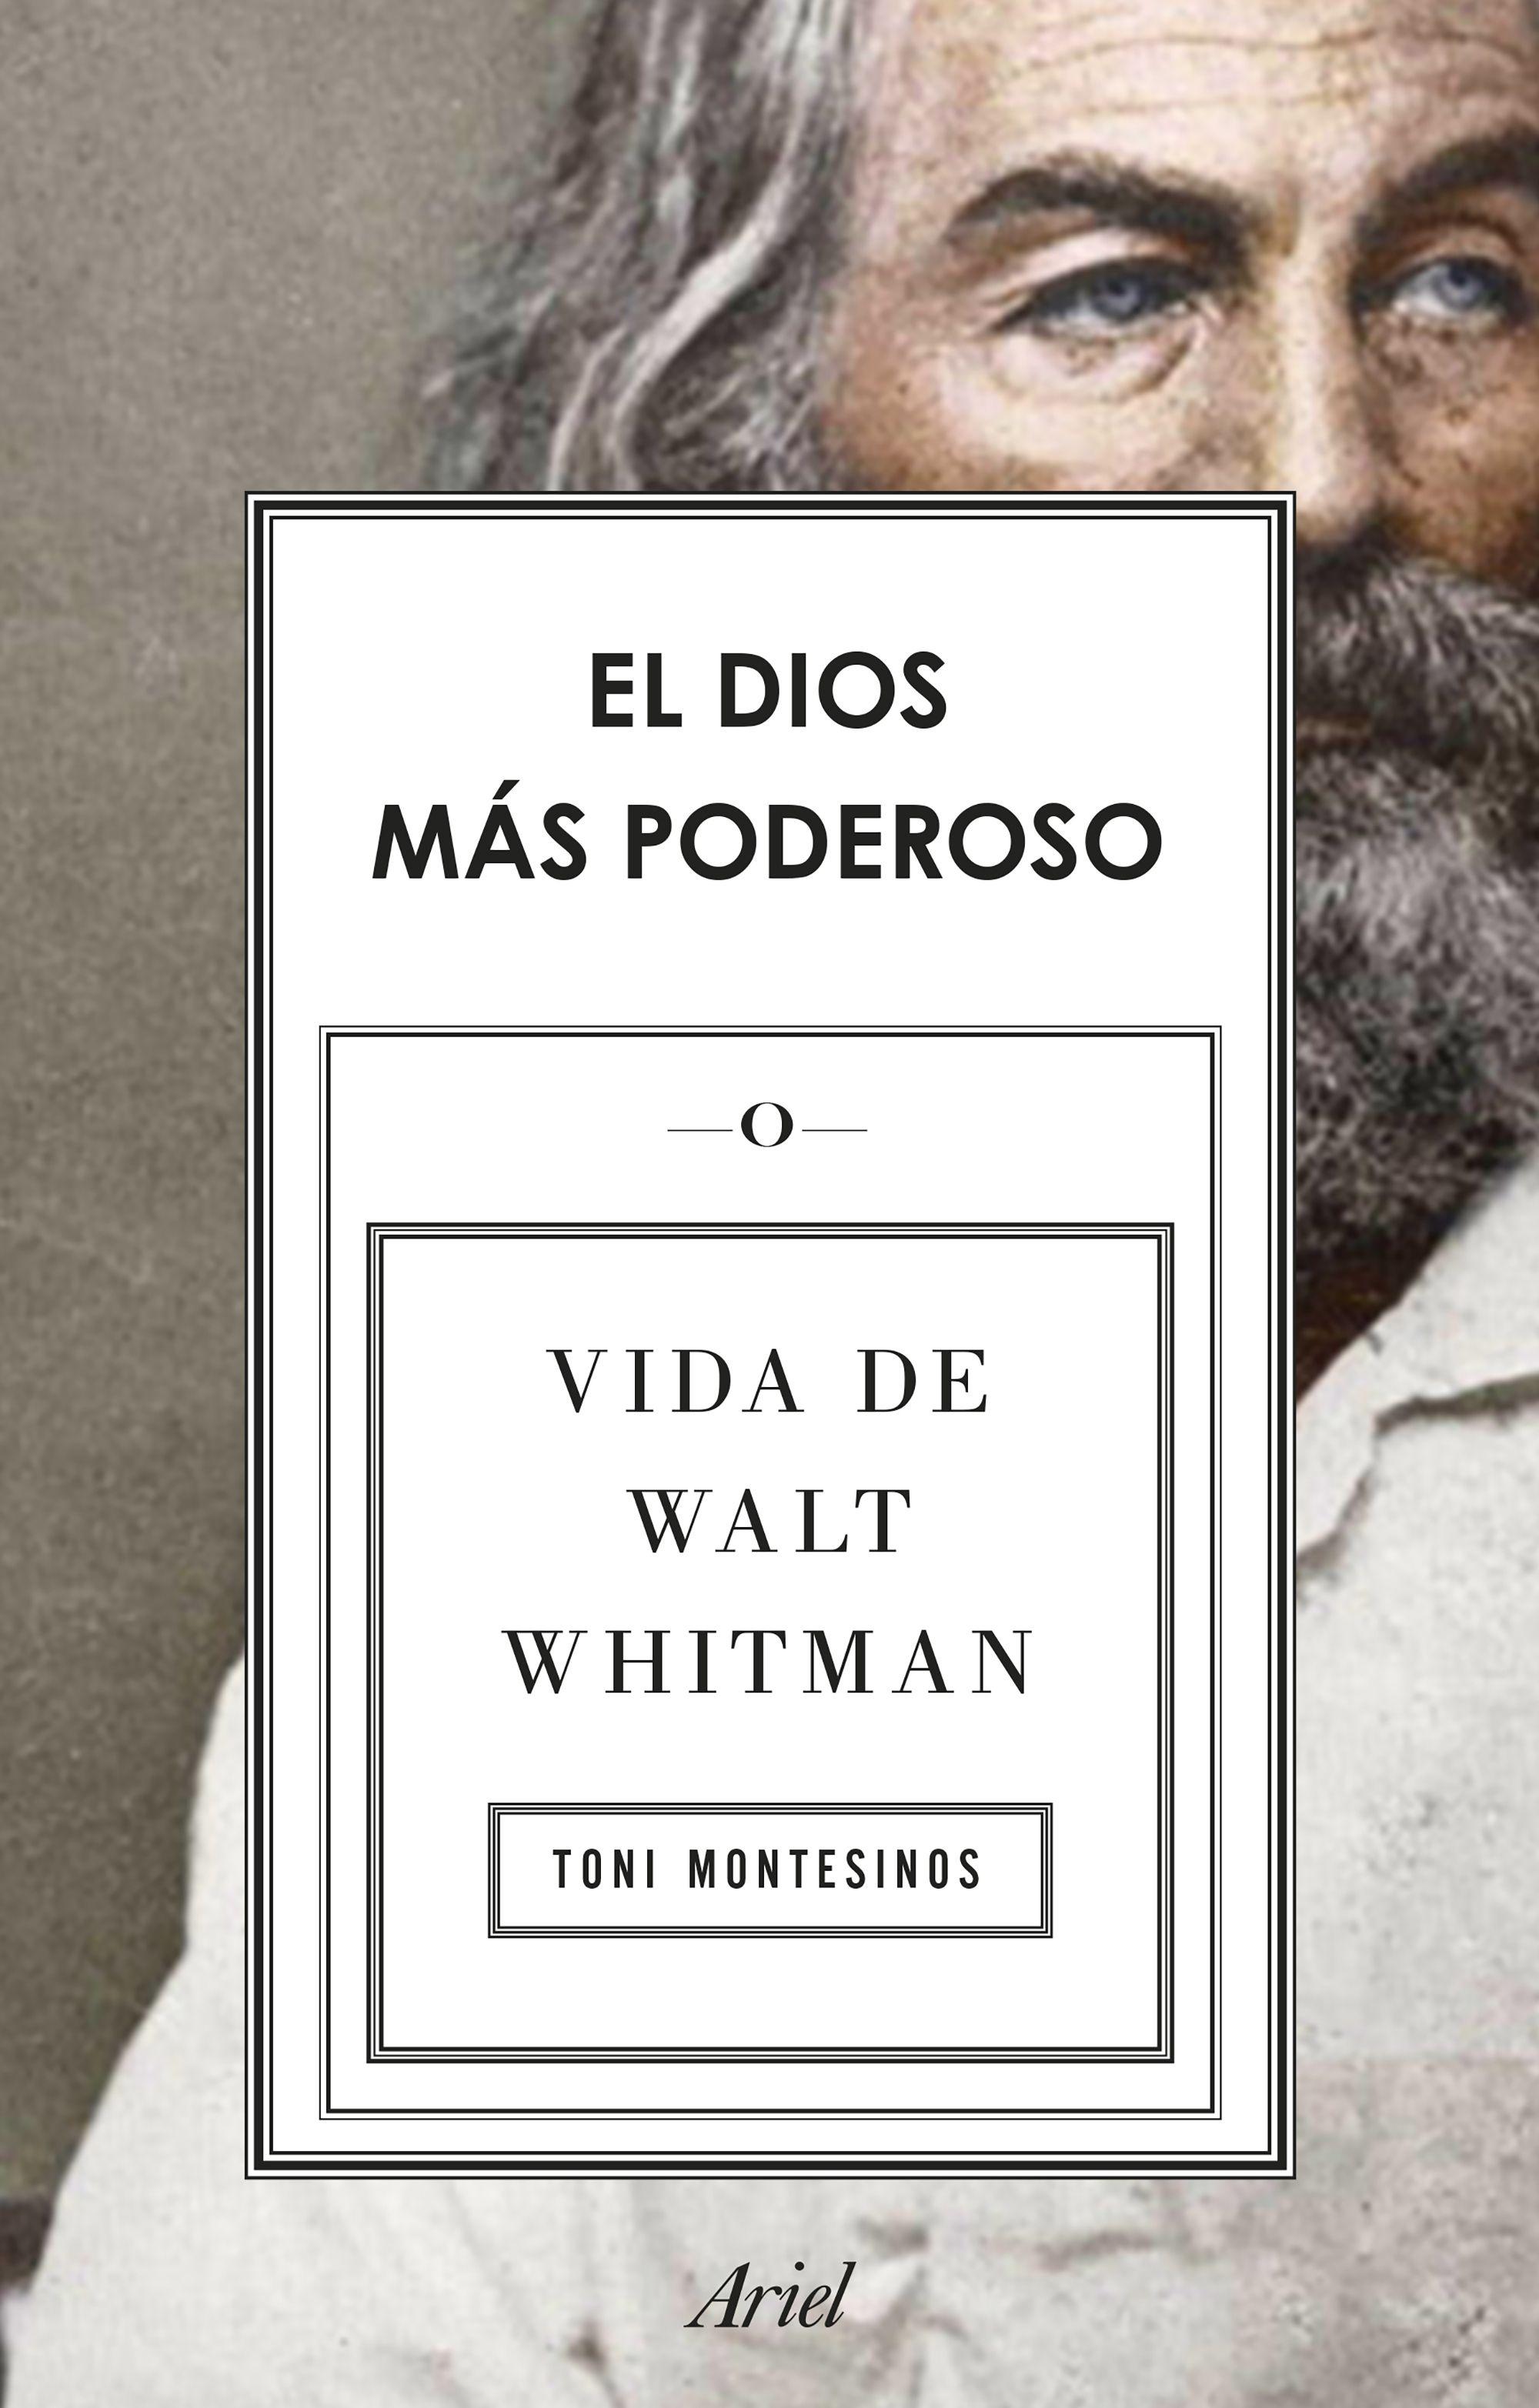 El Dios Más Poderoso "Vida de Walt Whitman". 